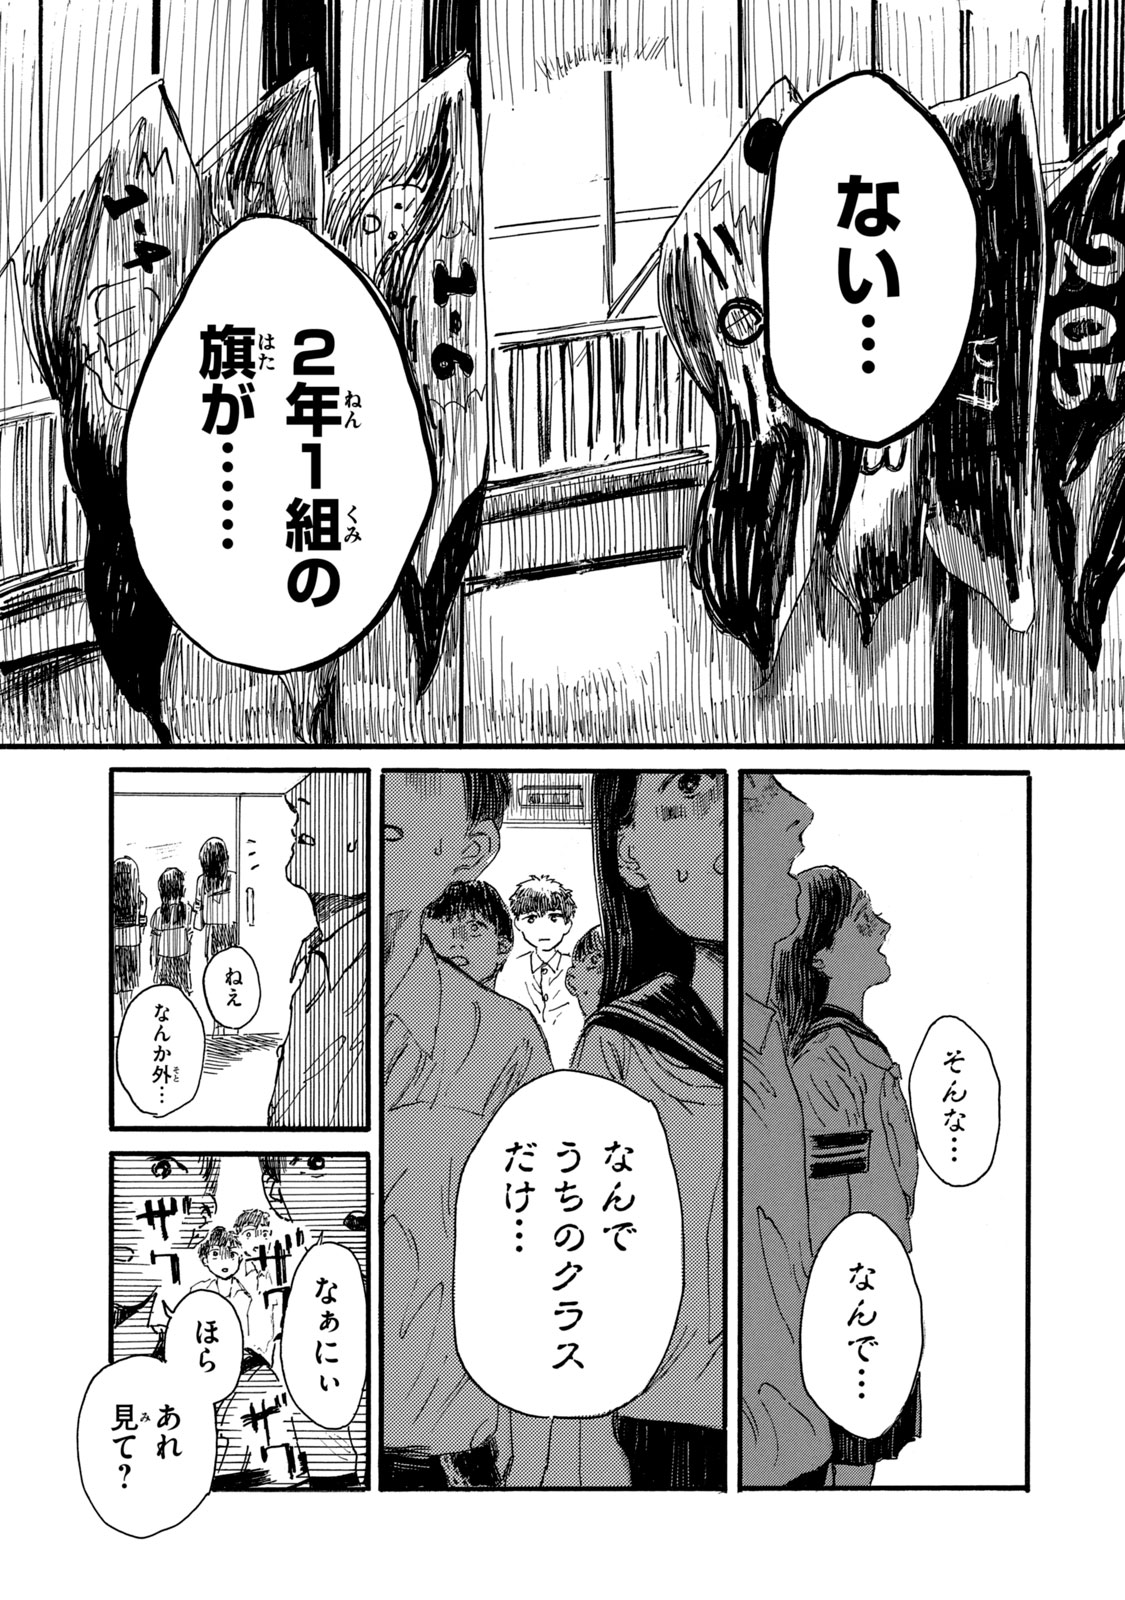 Watashi no Hara no Naka no Bakemono - Chapter 9 - Page 3